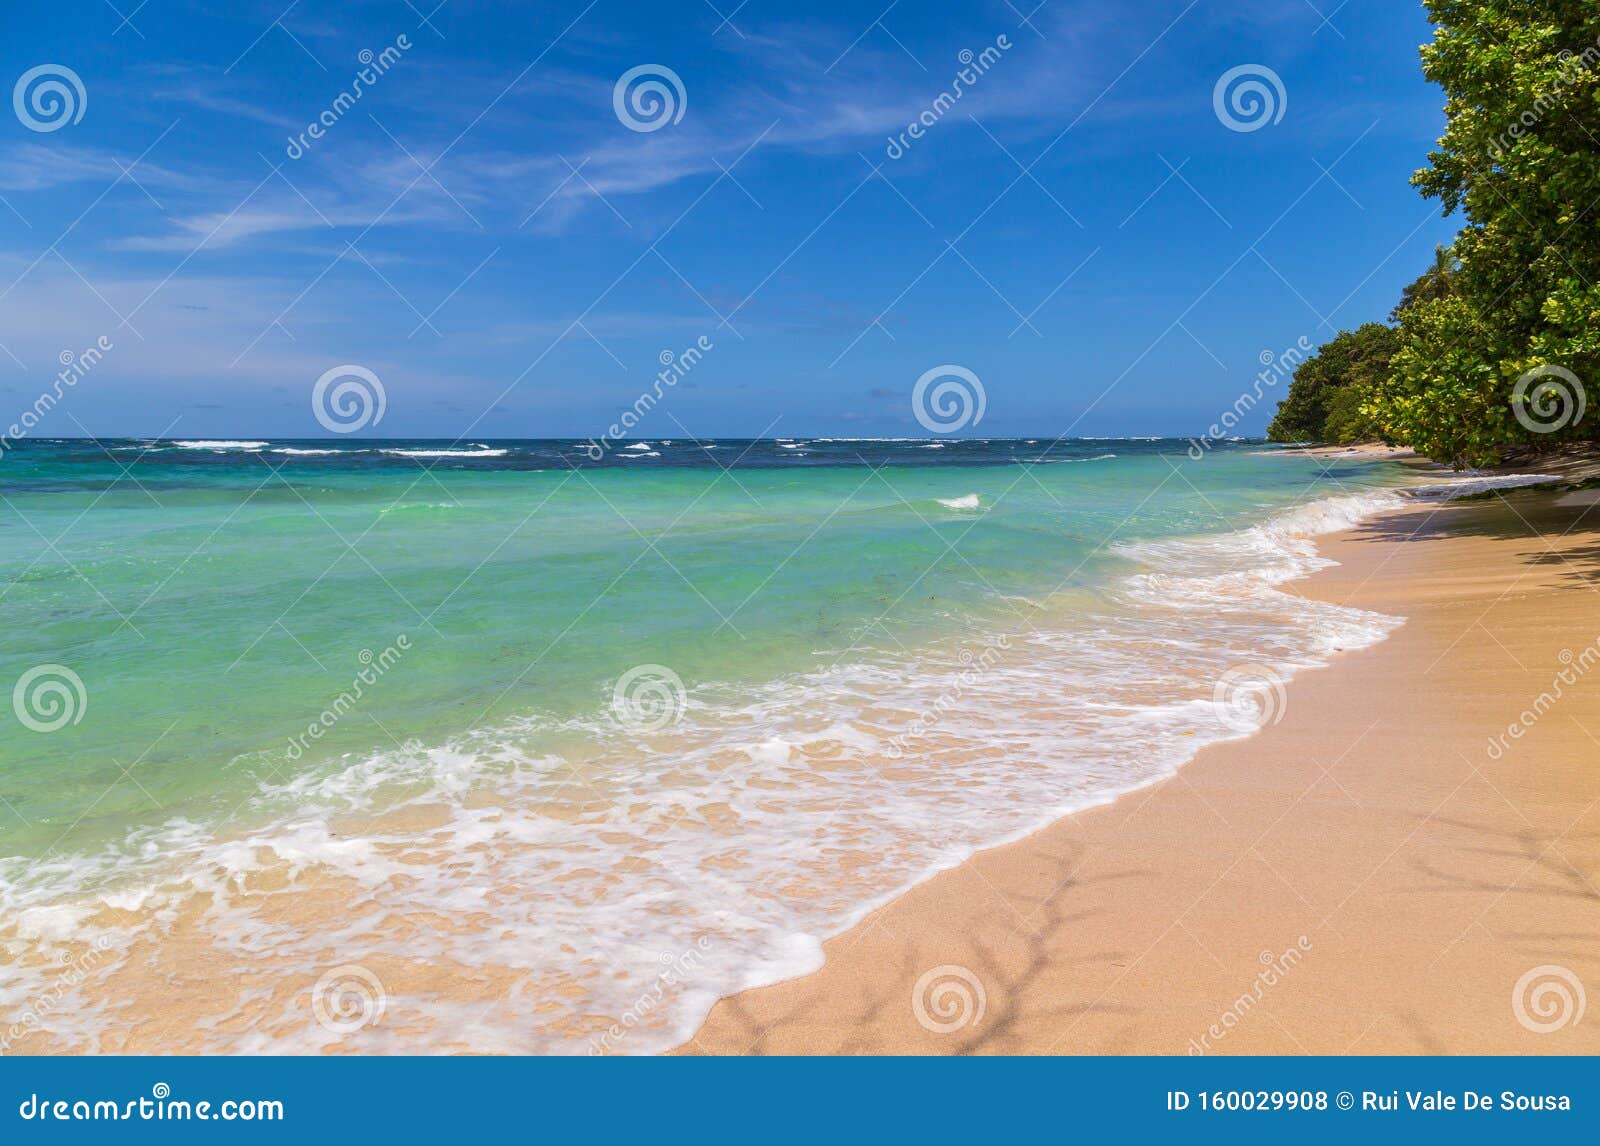 beach in costa rica